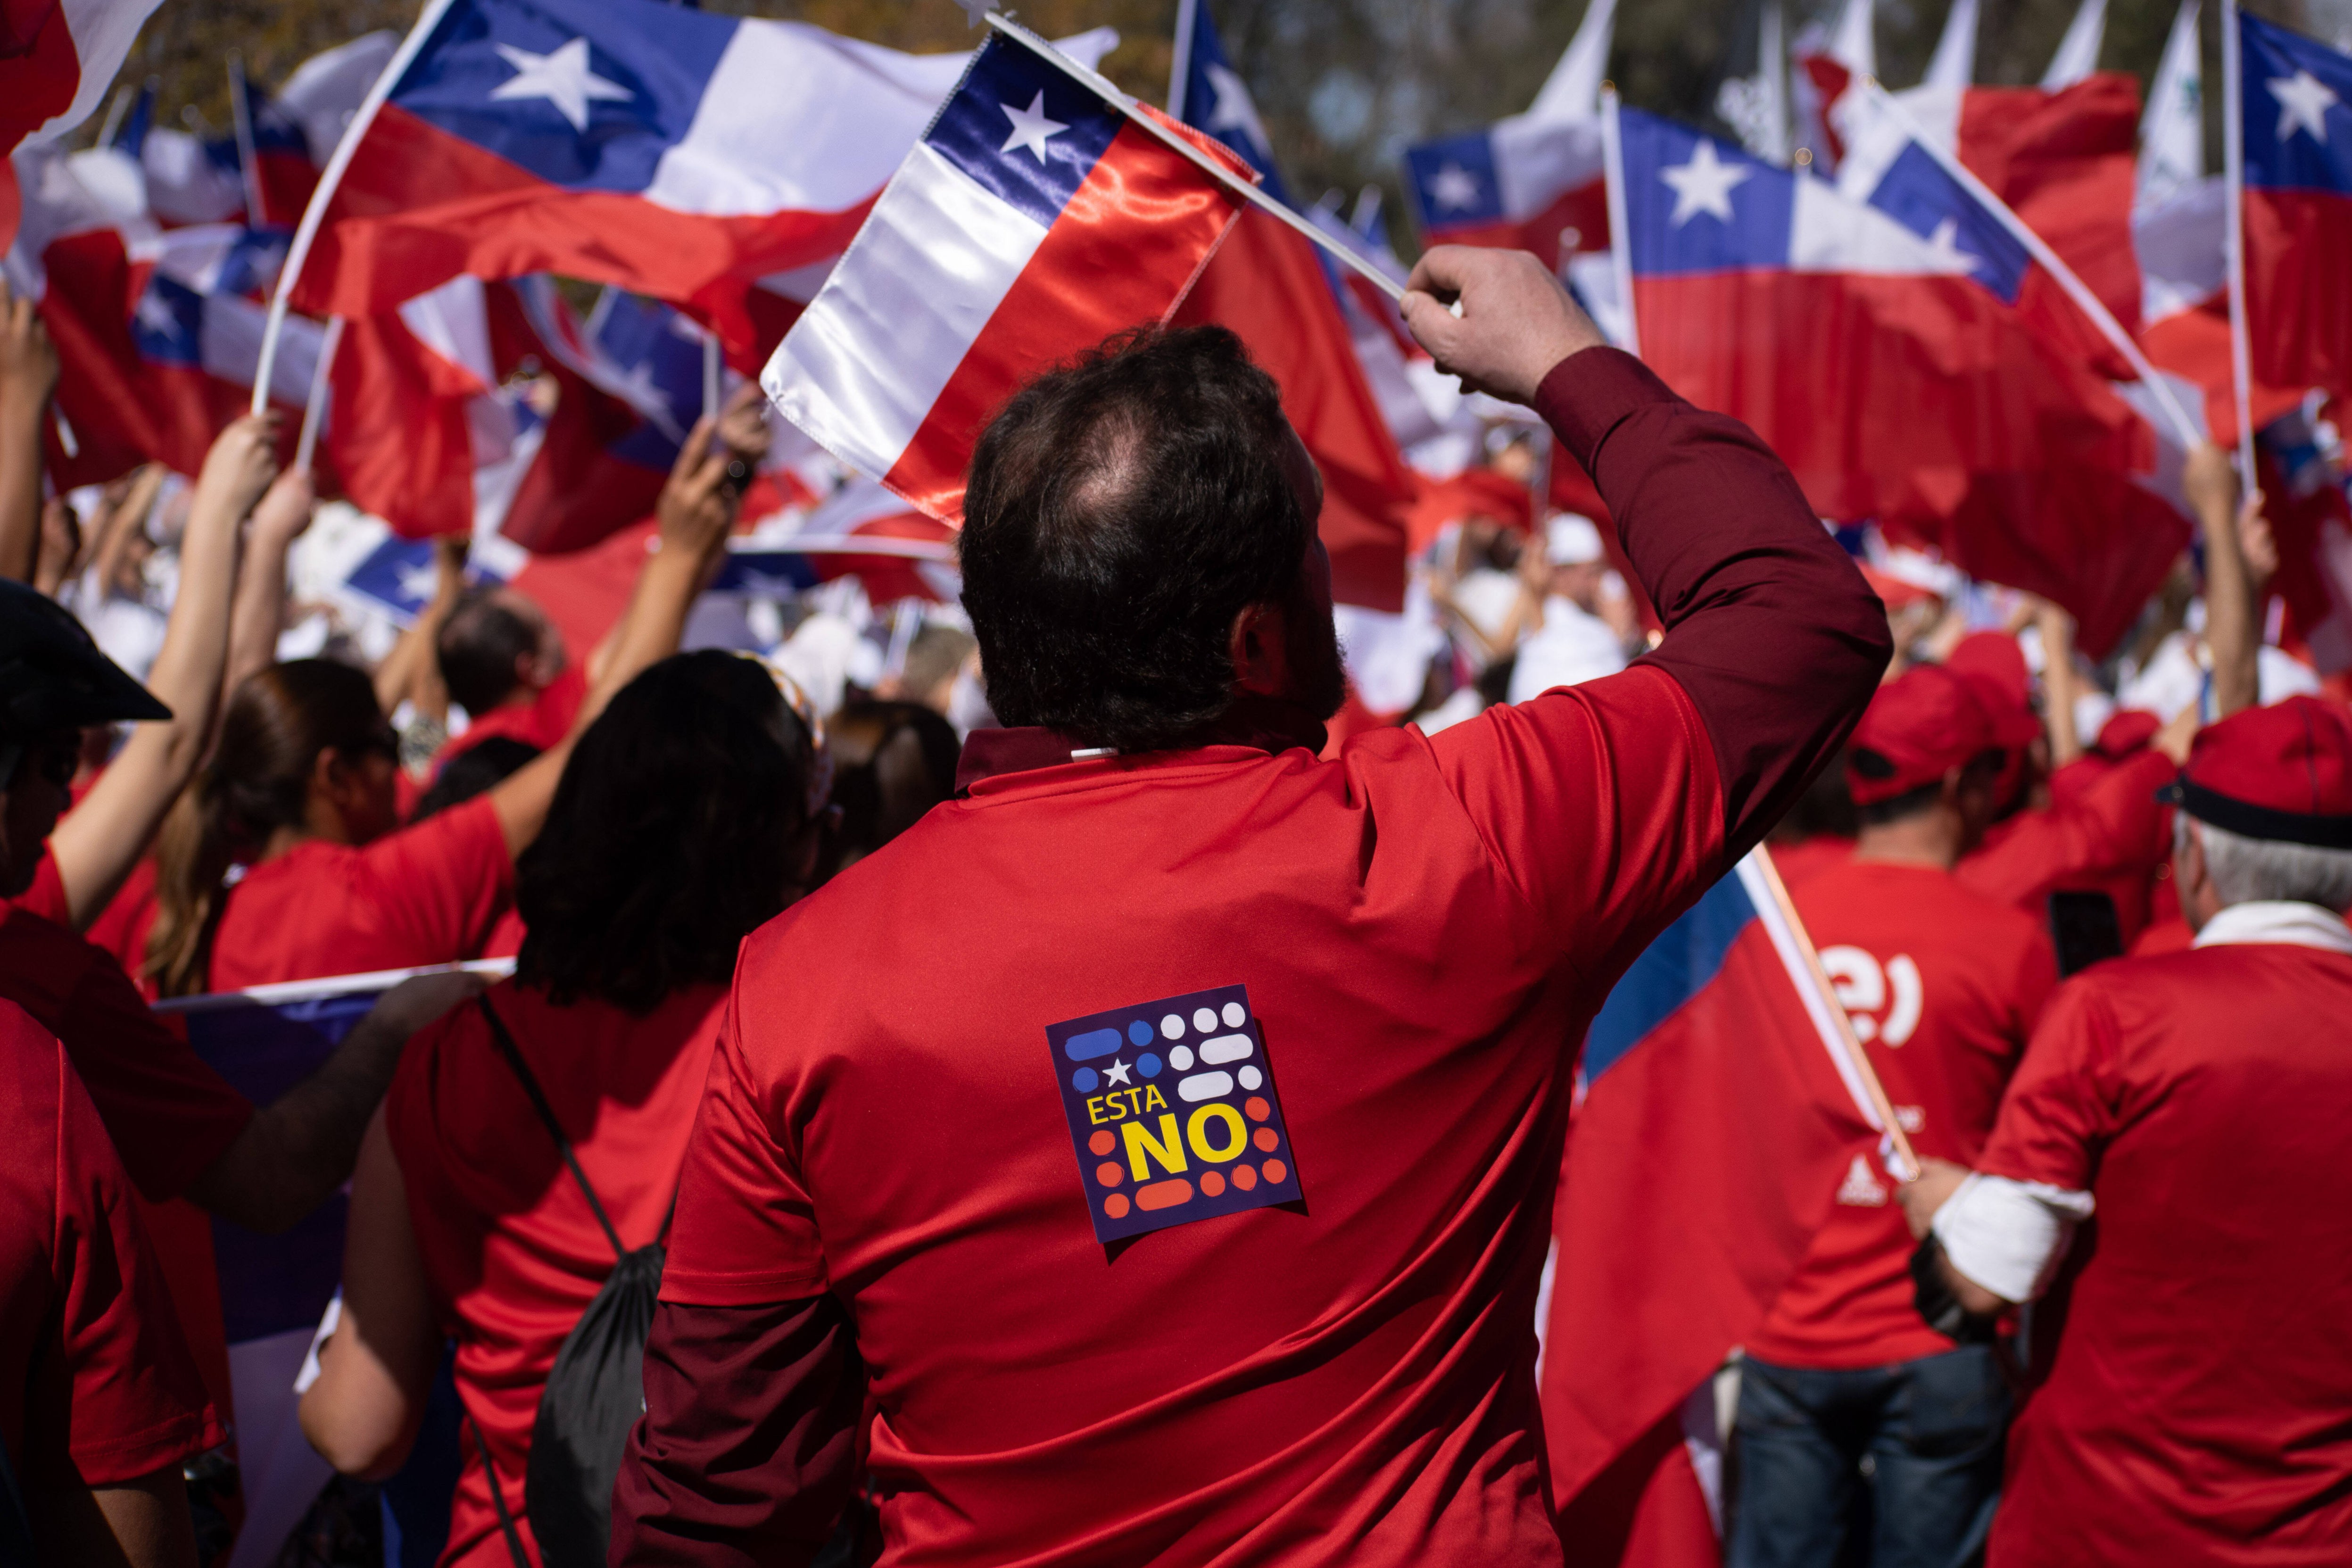 Südamerika - Neuer Verfassungs-Vorschlag für Chile gebilligt - Referendum am 17. Dezember